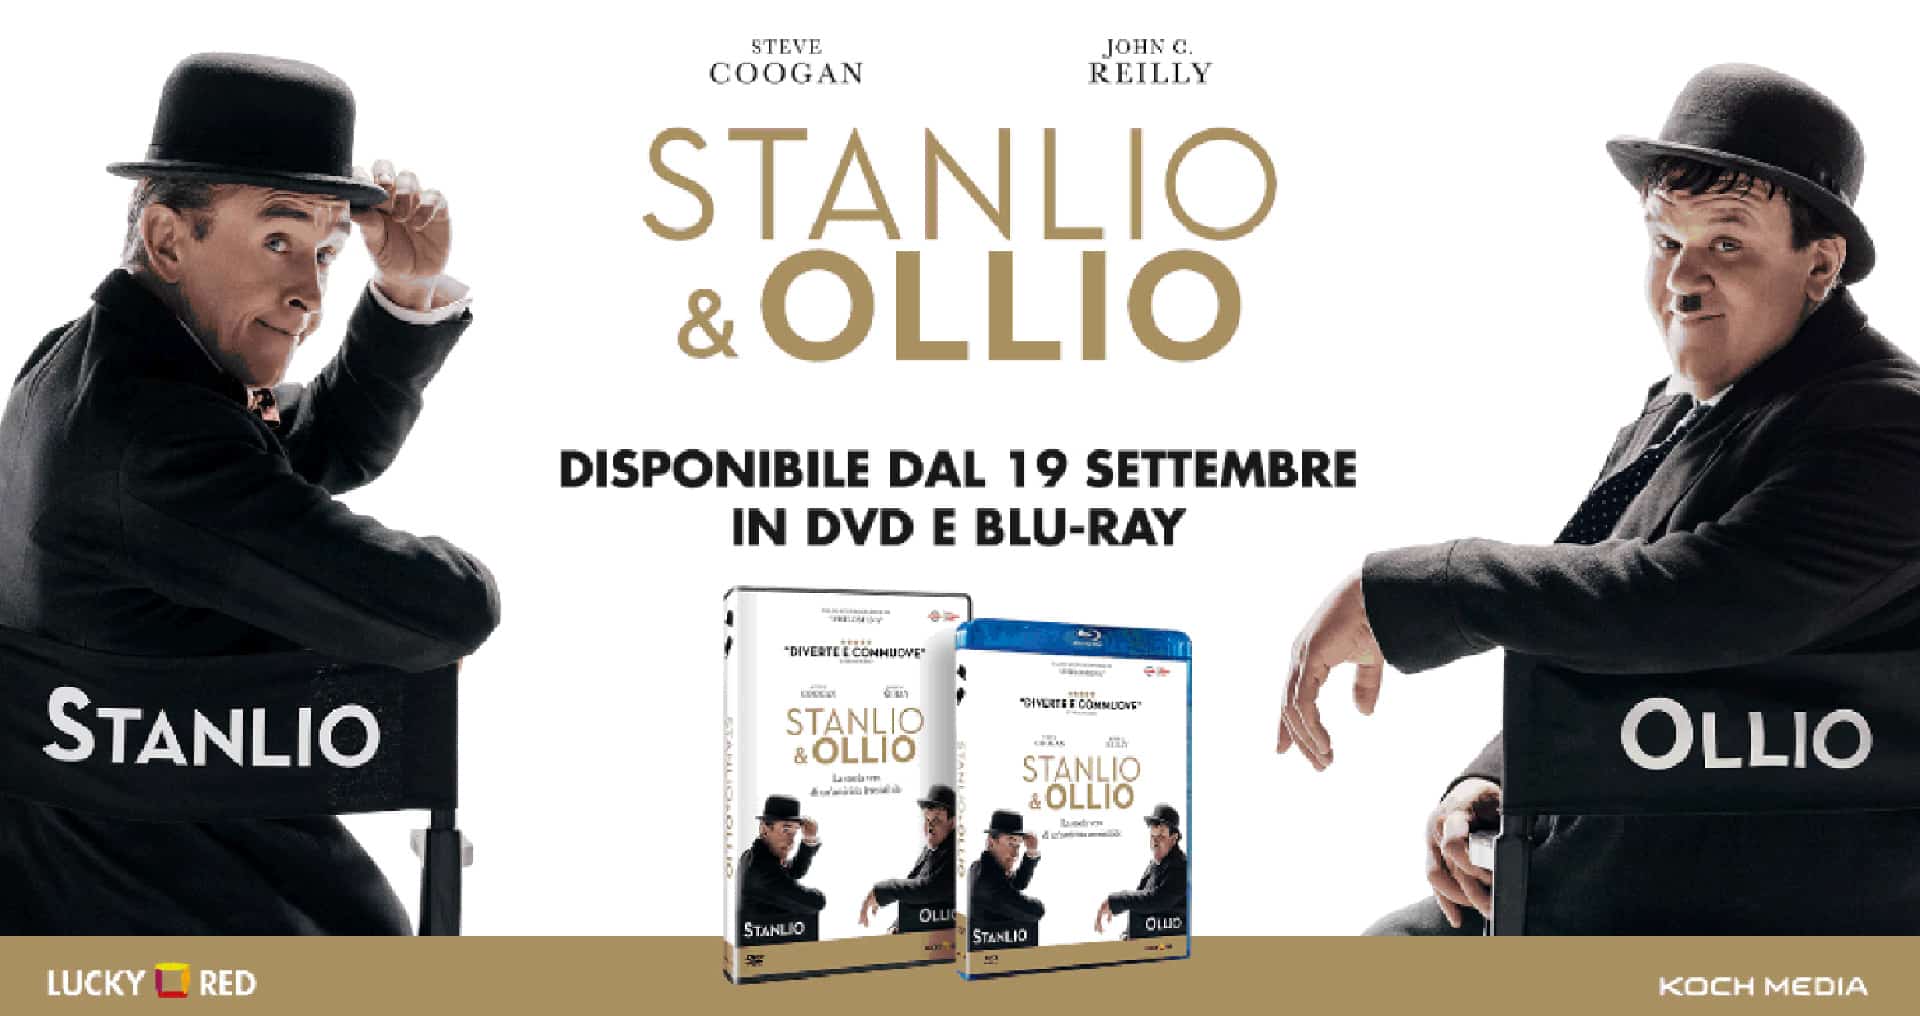 Stanlio & Ollio: il film disponibile in Home Video dal 19 settembre 2019